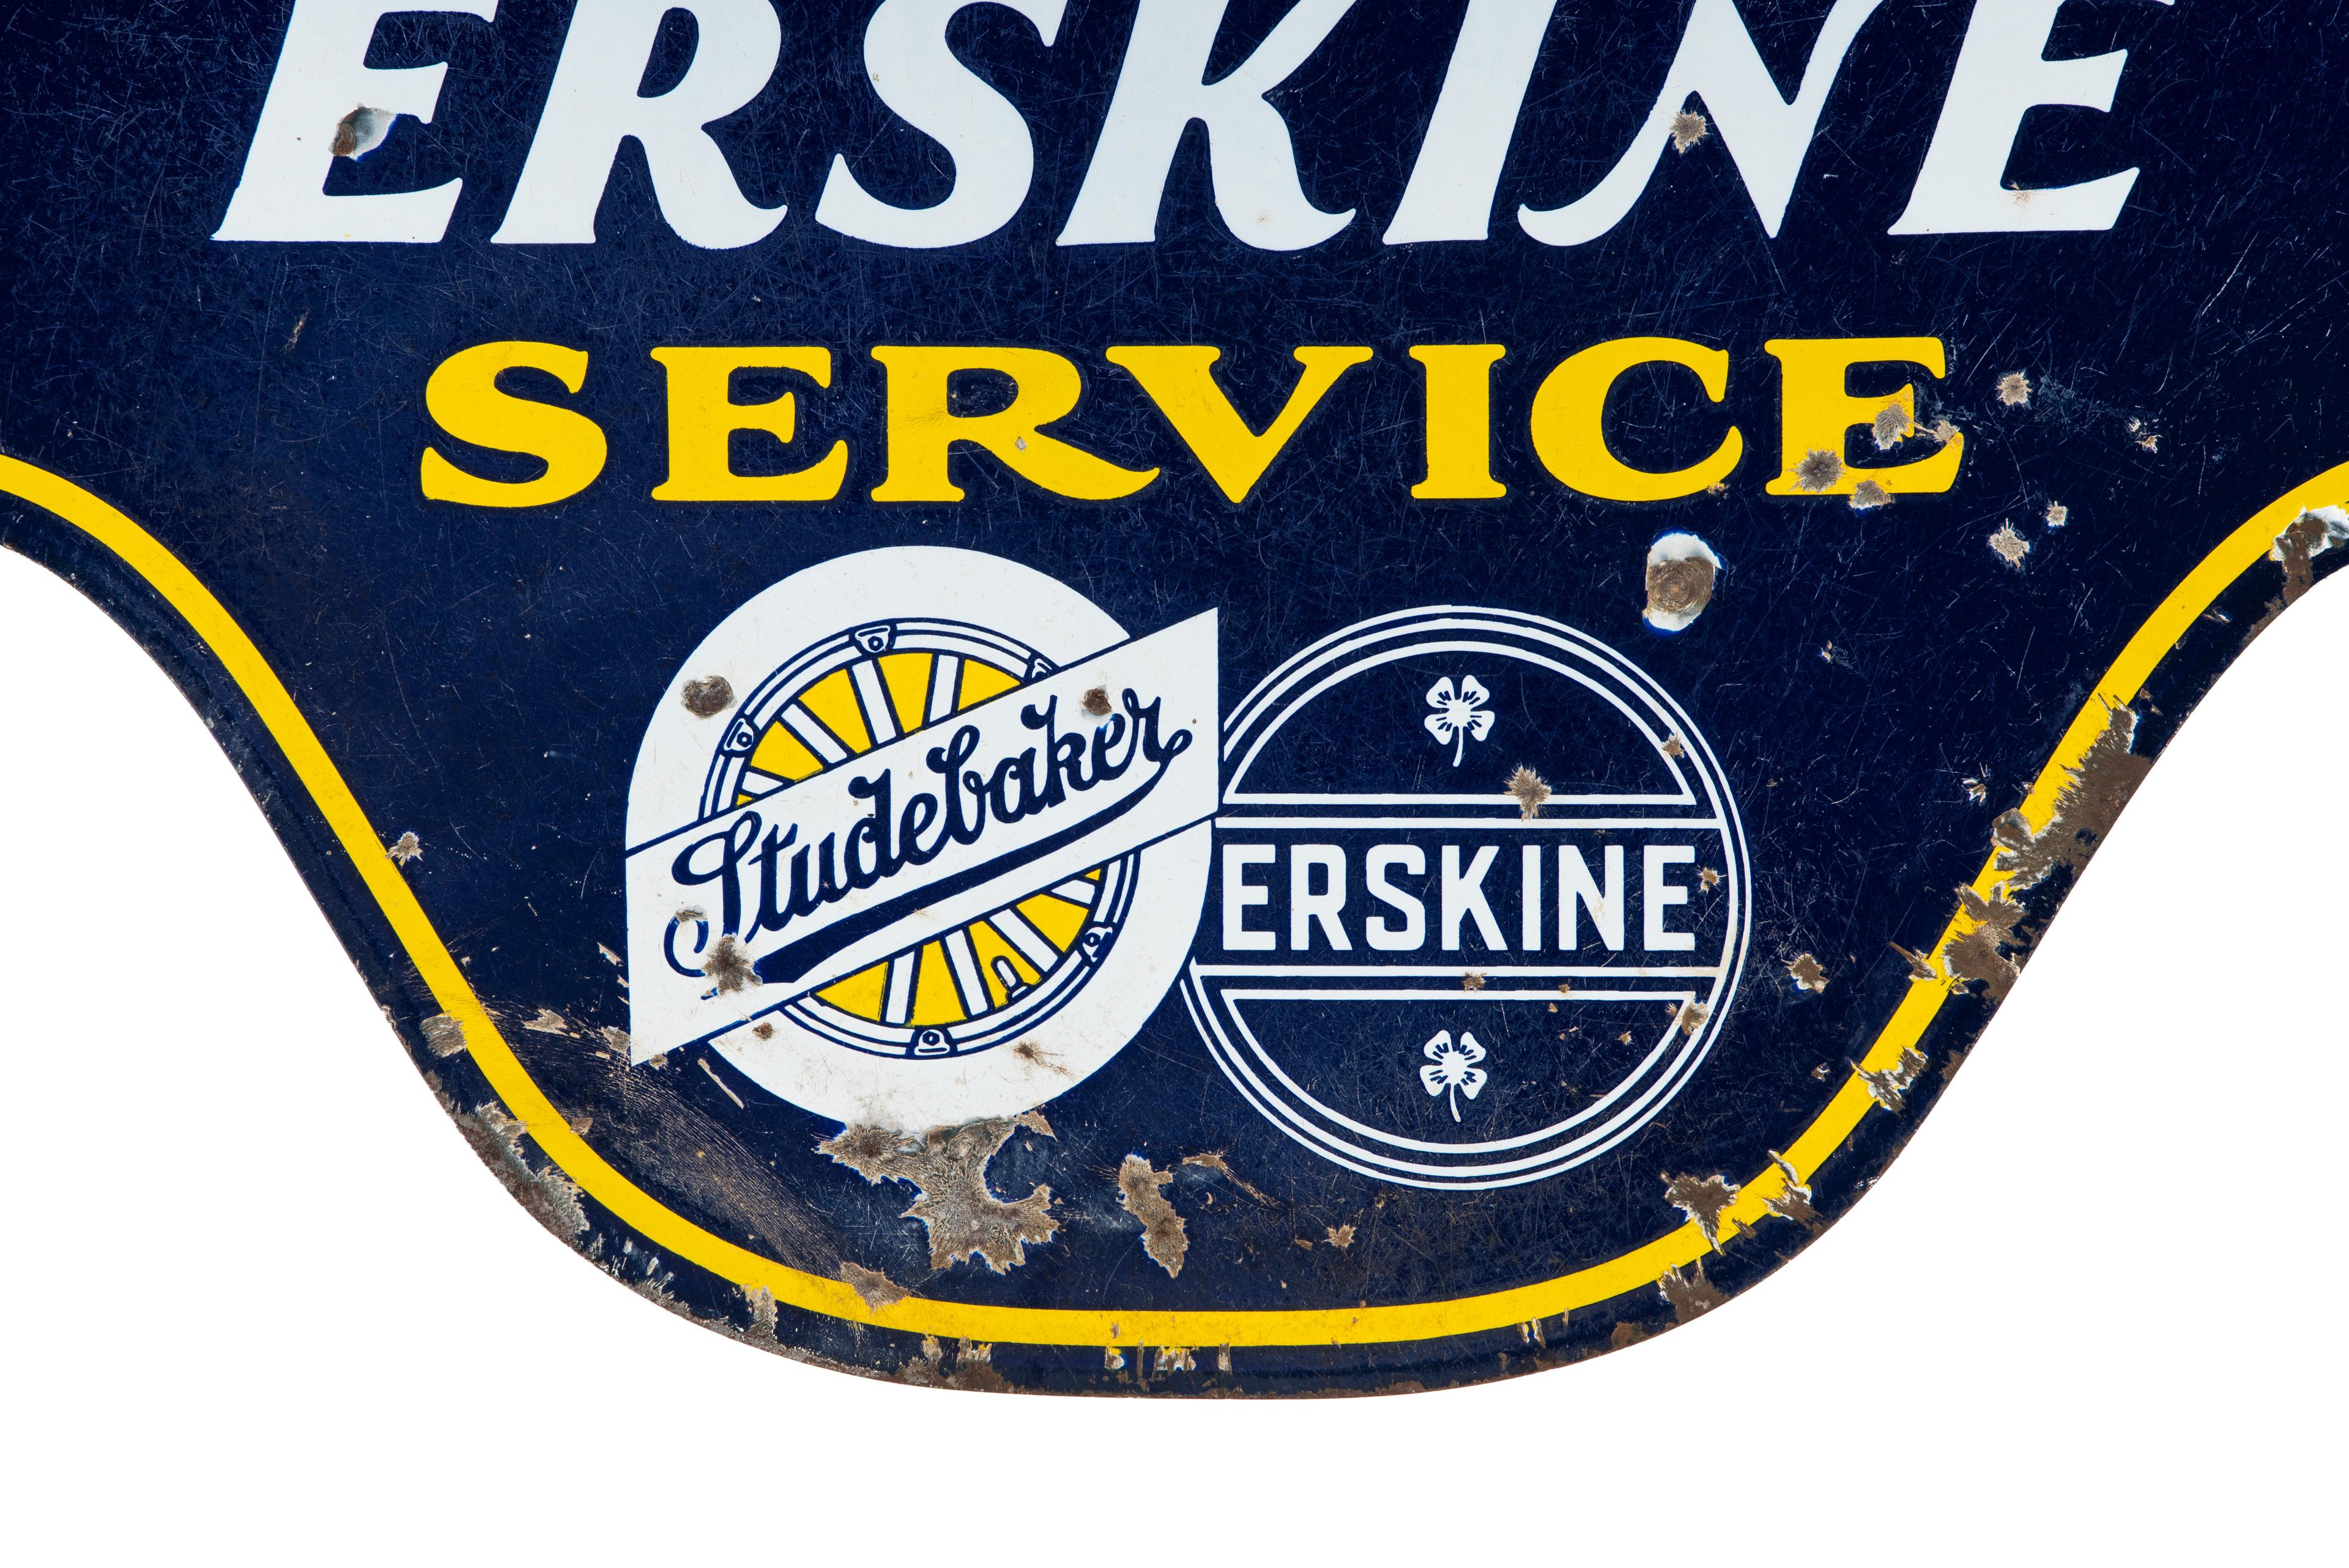 Studebaker Erskine Service Porcelain Sign